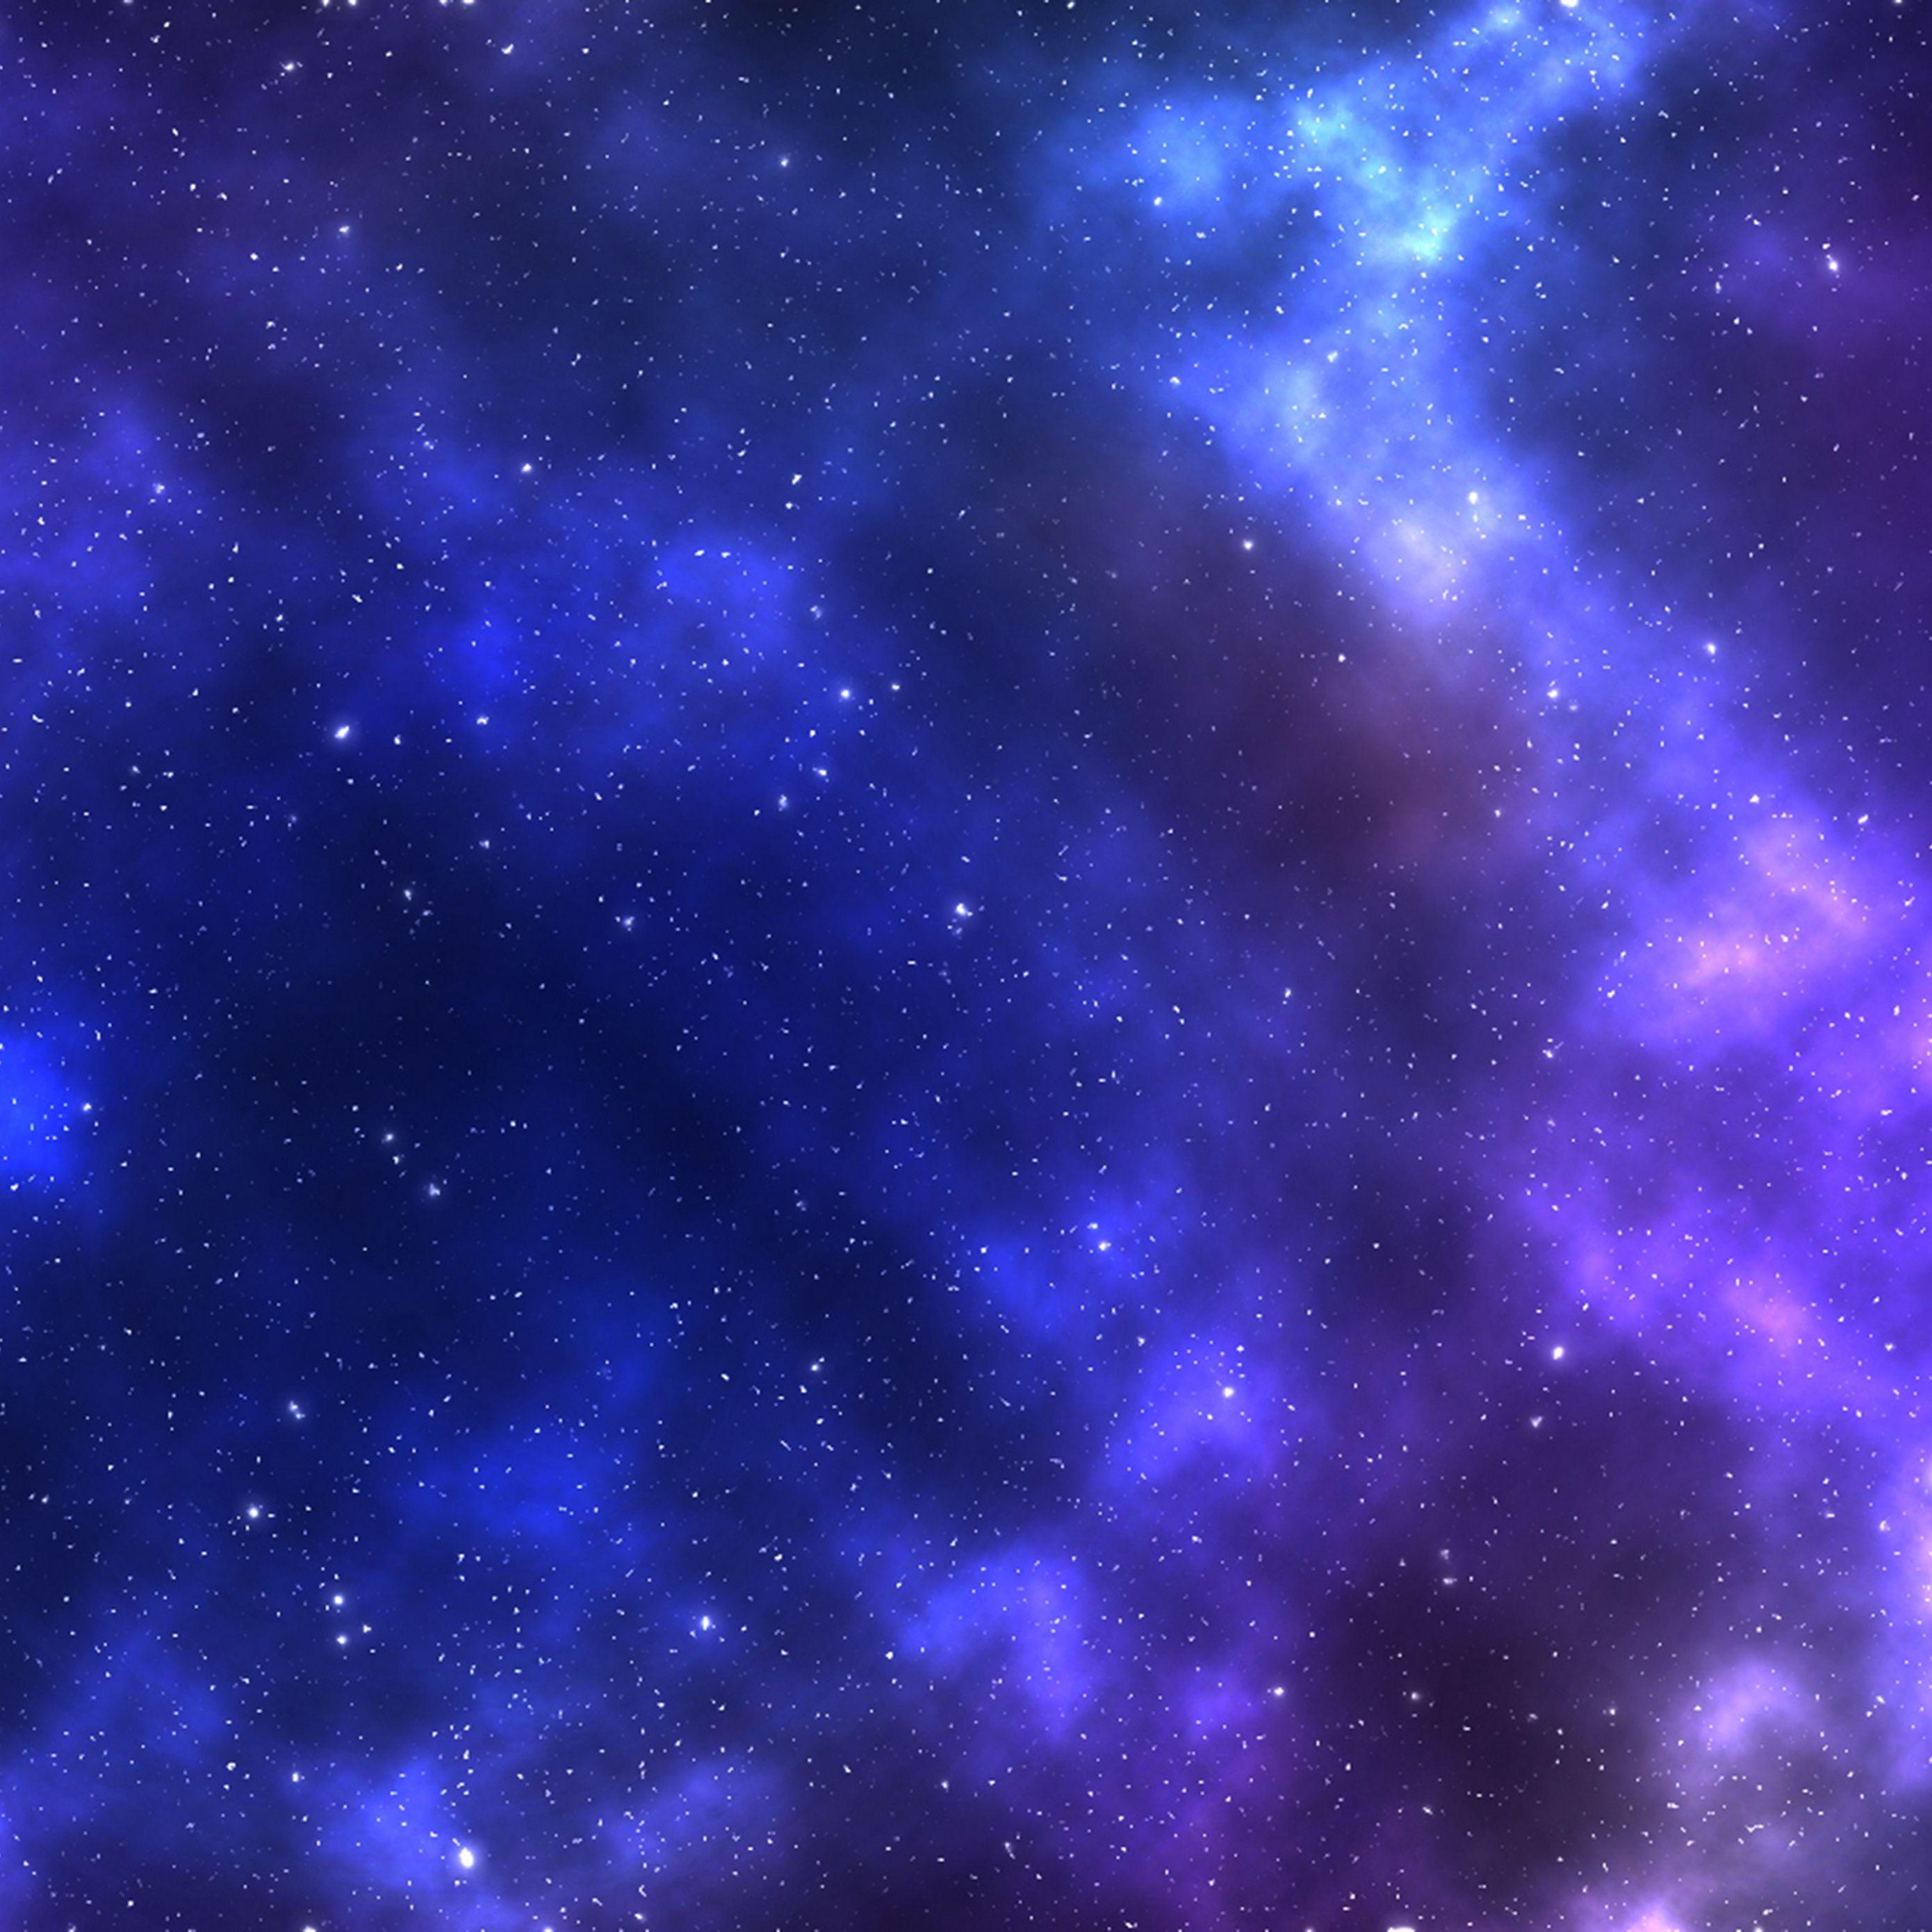 Purple Night Sky Wallpapers - Top Free Purple Night Sky ...